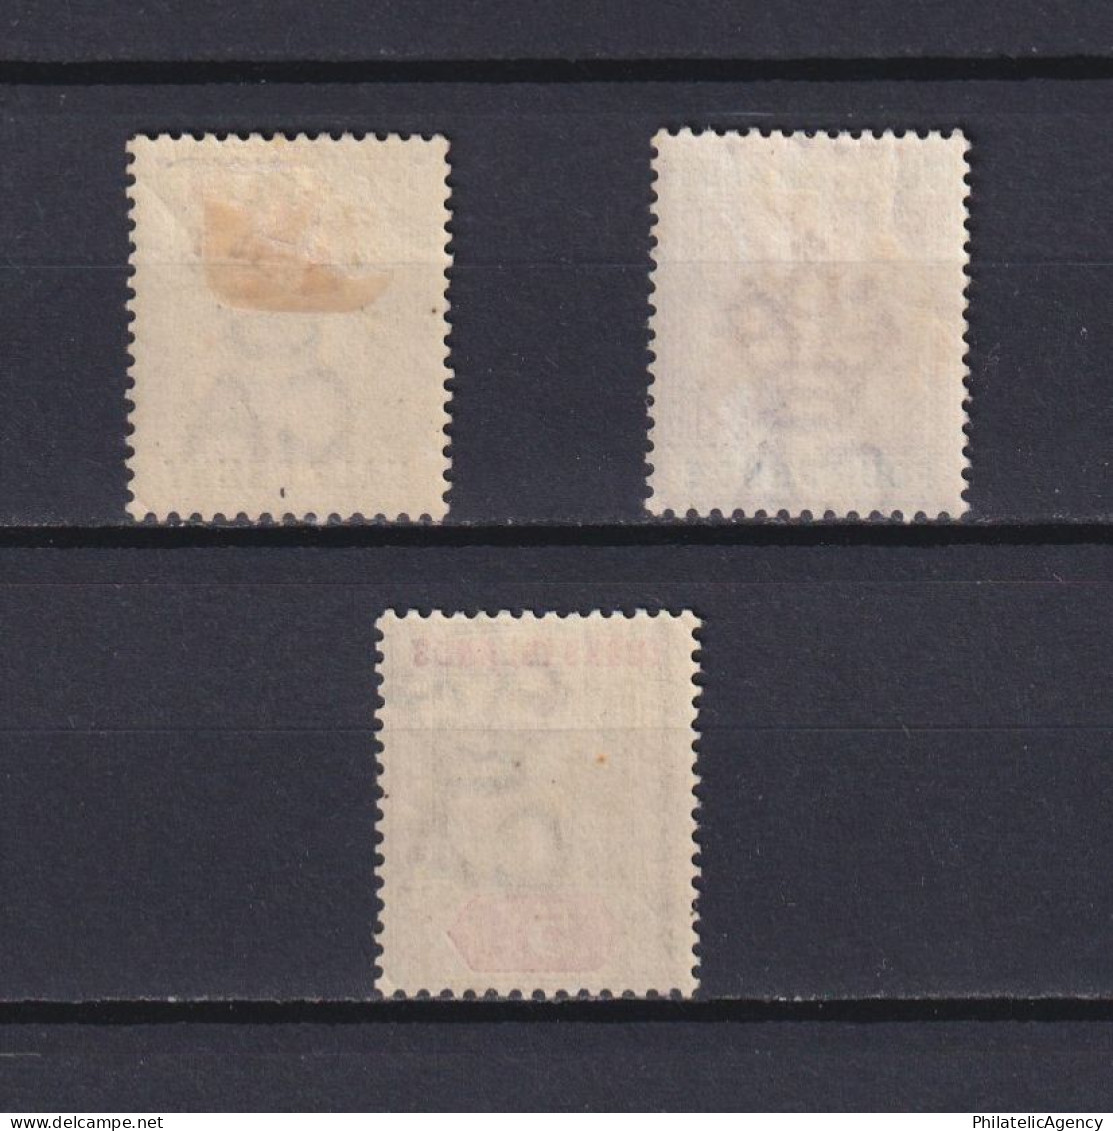 TURKS ISLANDS 1893, SG #70-72, CV £40, Queen Victoria, MH - Turks And Caicos